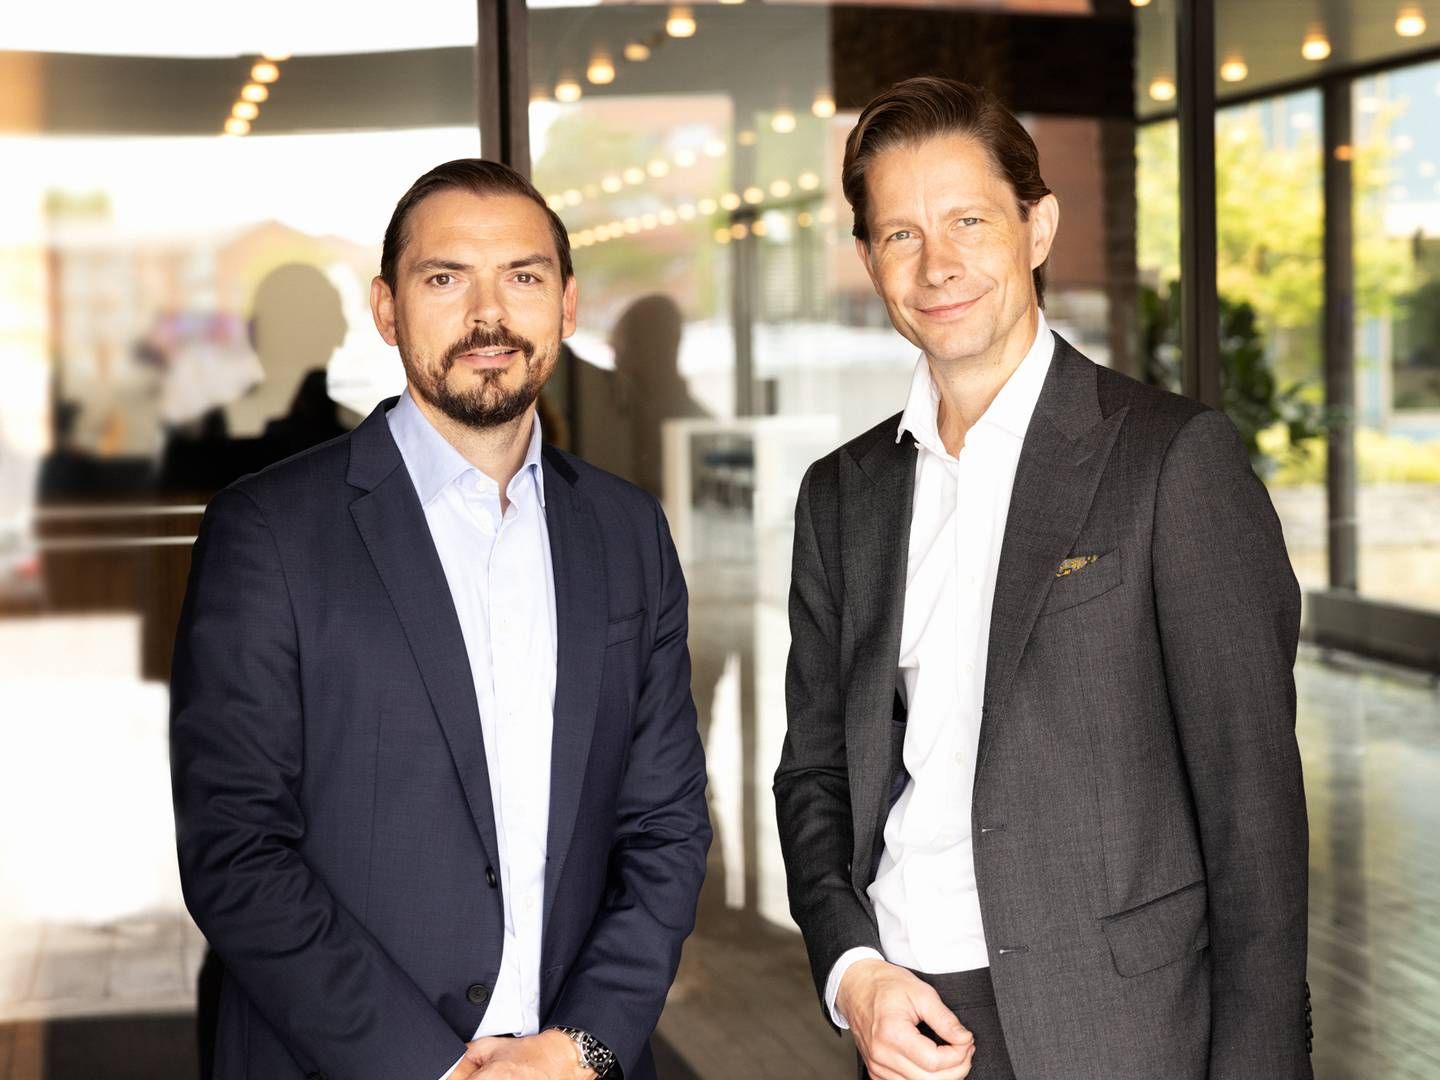 Thomas Otbo, CIO at Danske Bank Asset Management (left), and Christian Heiberg, Head of Danske Bank Asset Management, present the new strategy for Denmark's largest asset manager. | Photo: PR / Danske Bank